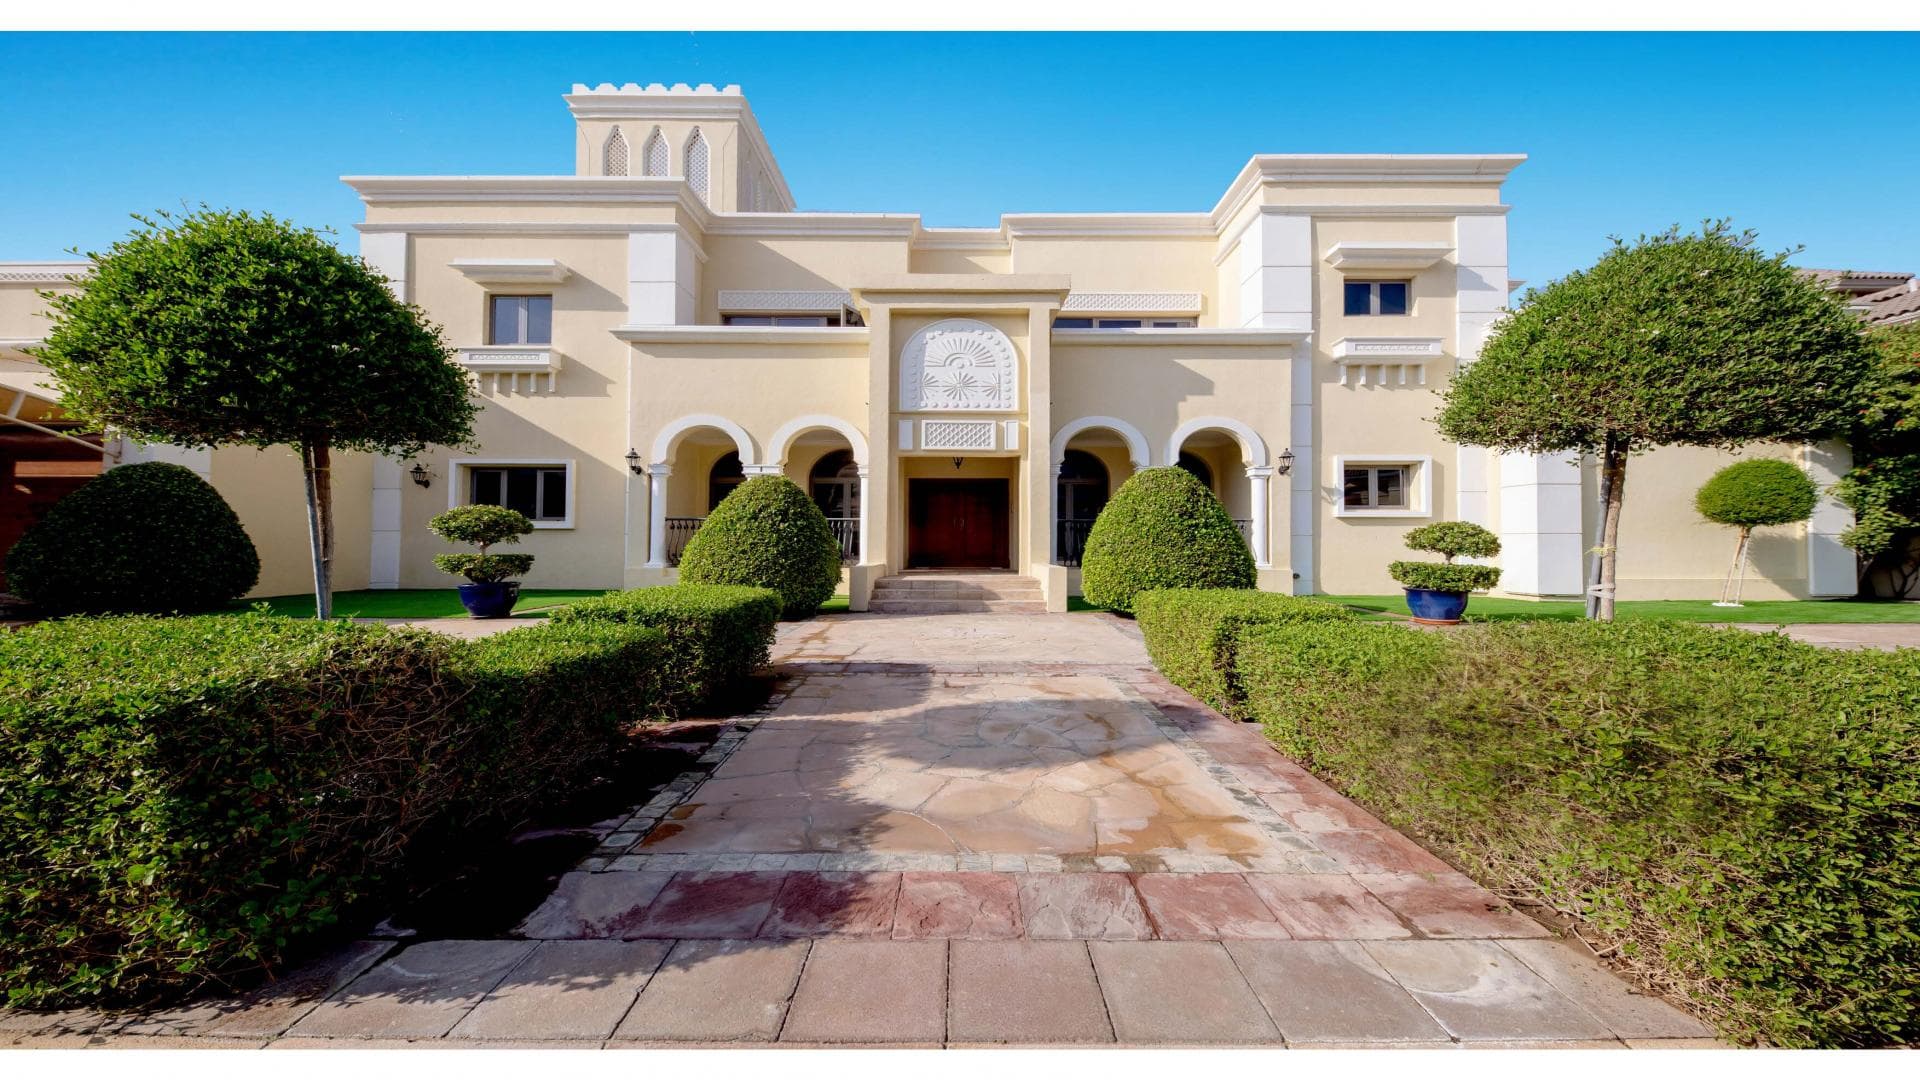 7 Bedroom Villa For Rent Al Reem 2 Lp35747 1c6123b0098eb100.jpg